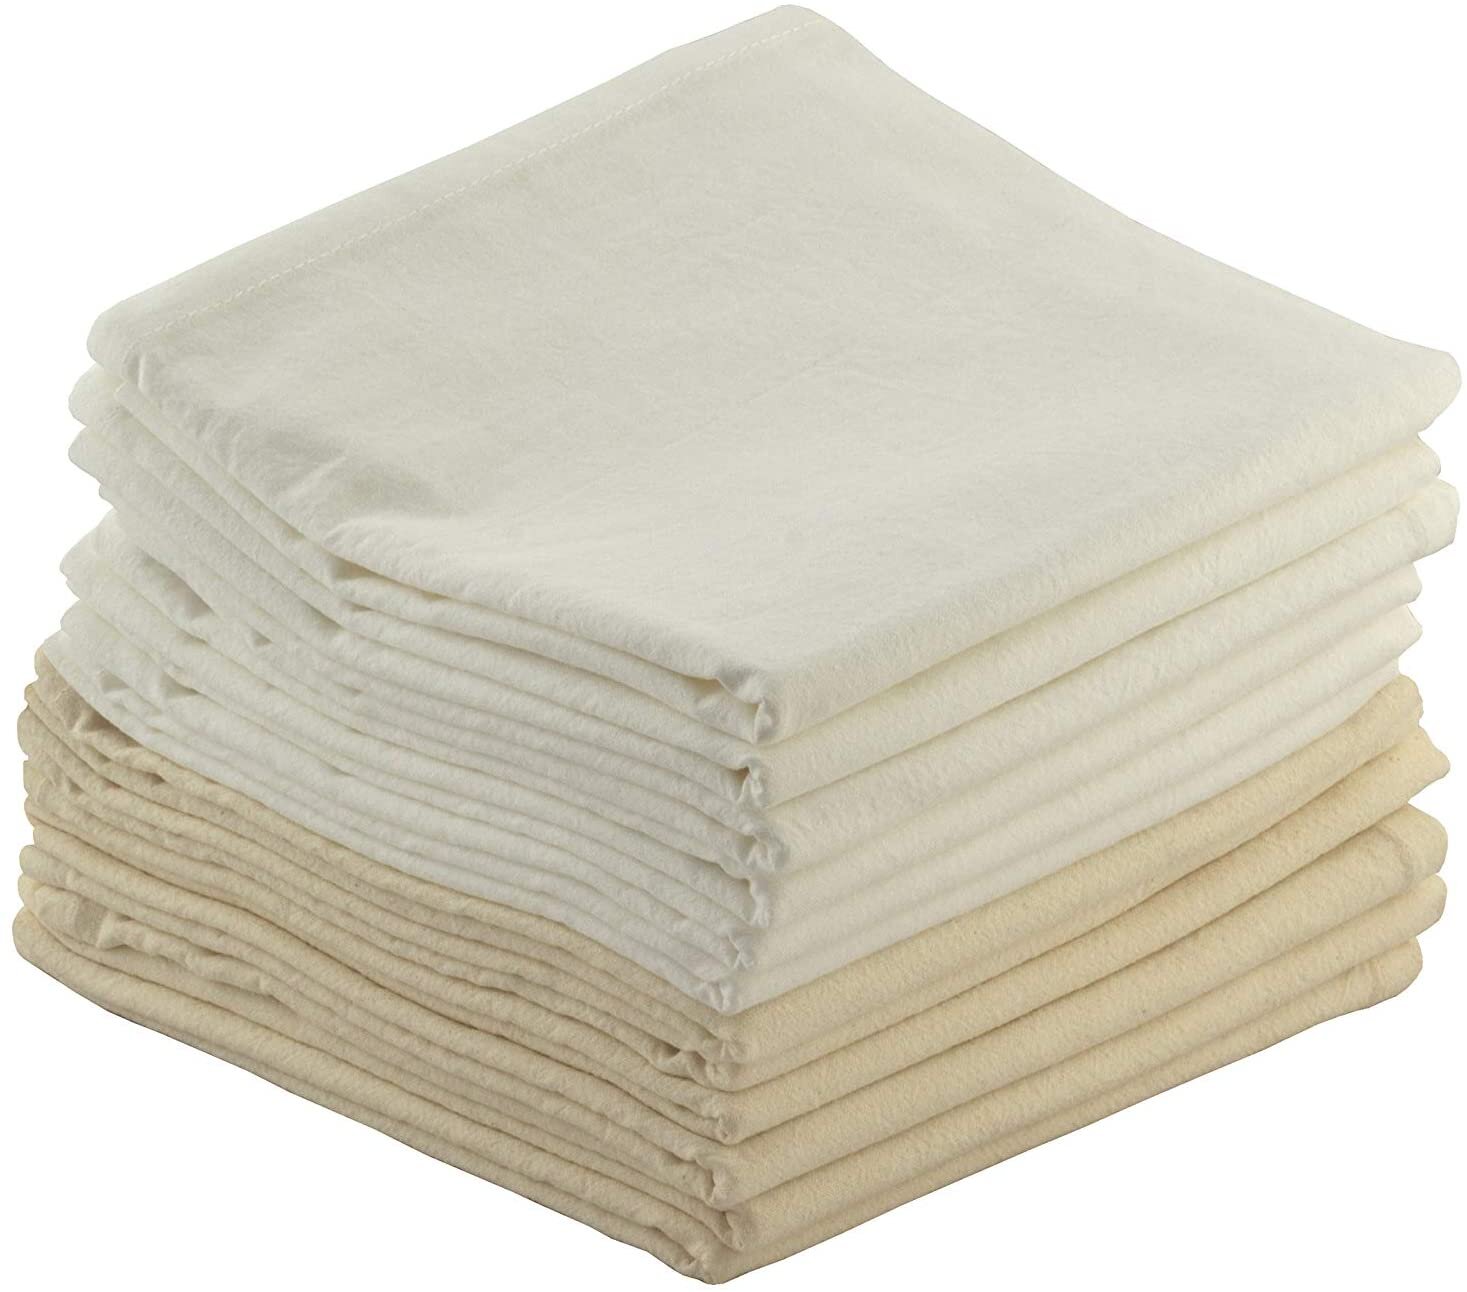  Pleasant Home Flour Sack Cotton Dish Towels (29 x 29